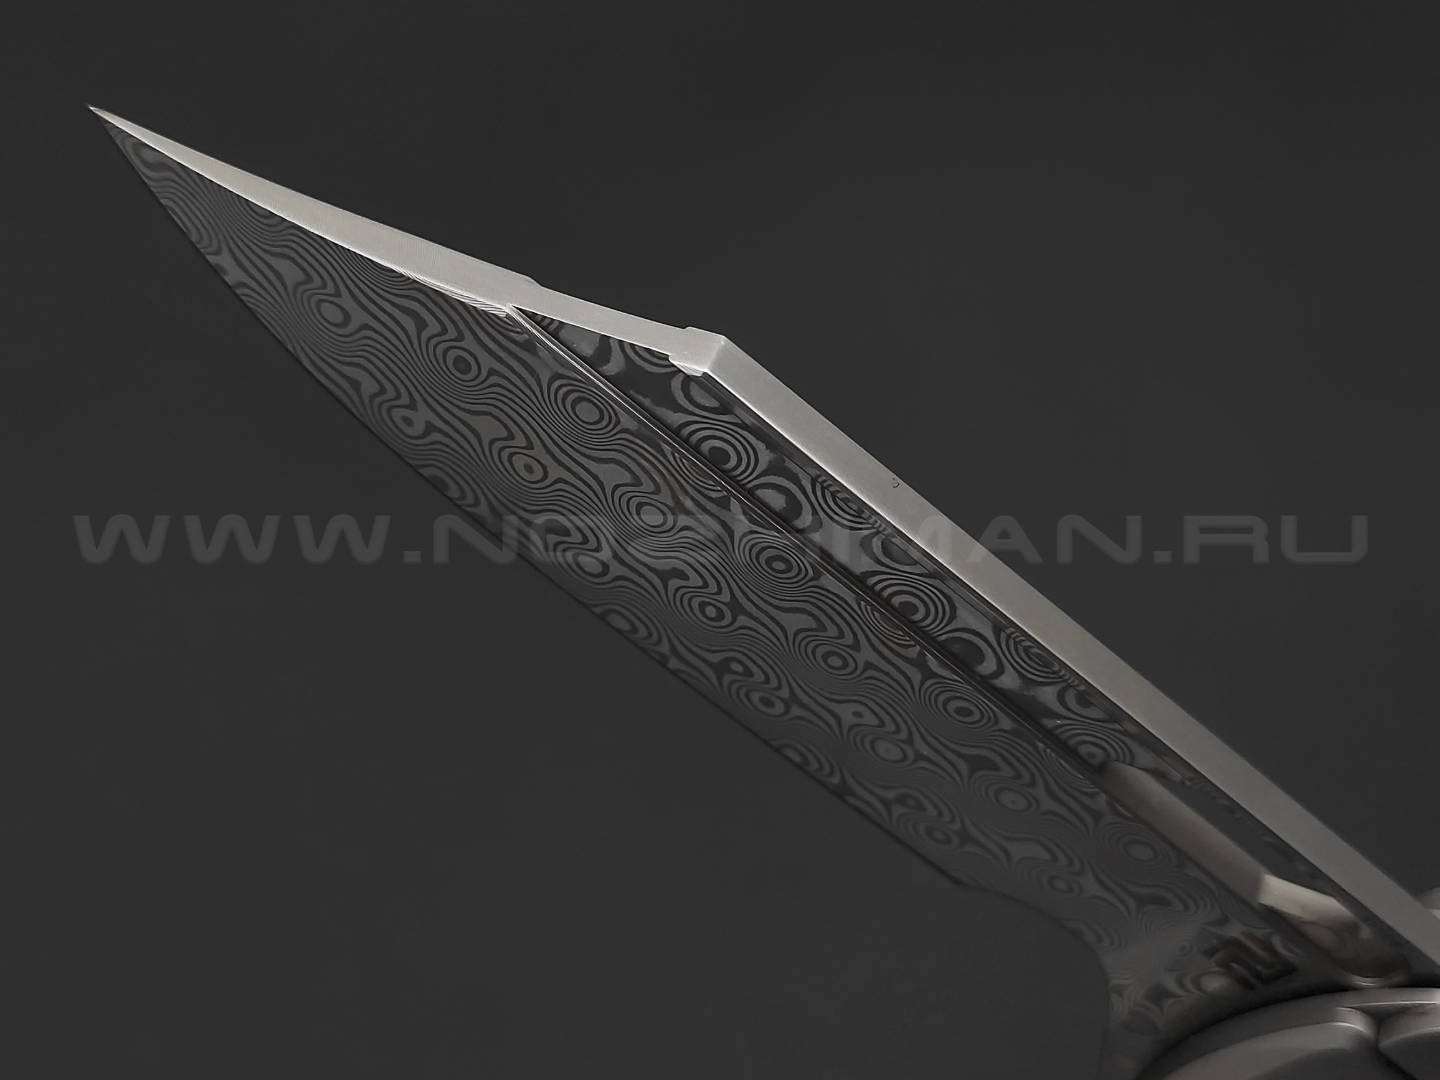 Нож Artisan Cutlery Blowback 1822GD-GY сталь Damascus, рукоять Titanium 6AL4V